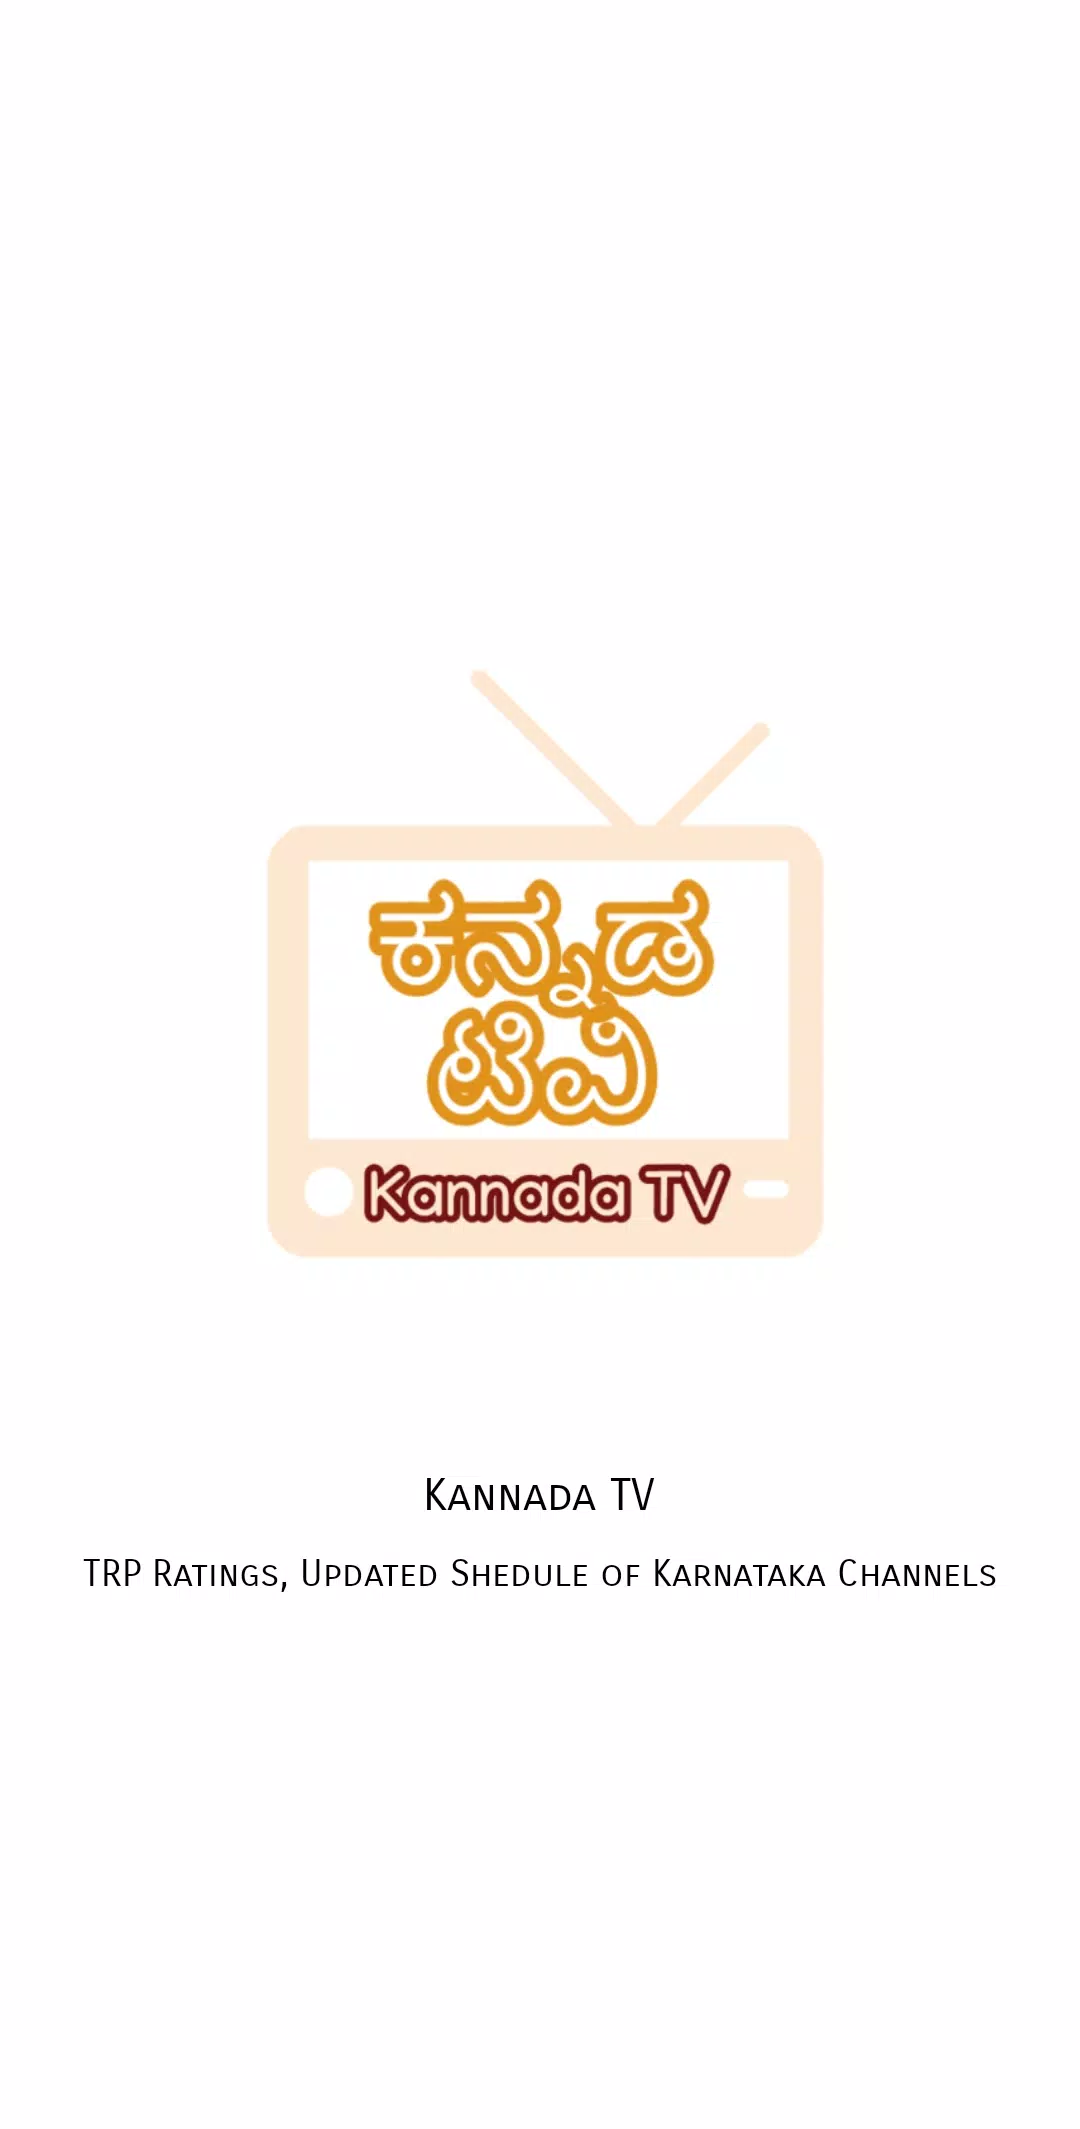 ಕನ್ನಡ How to Live Stream PUBG, how to livekannada